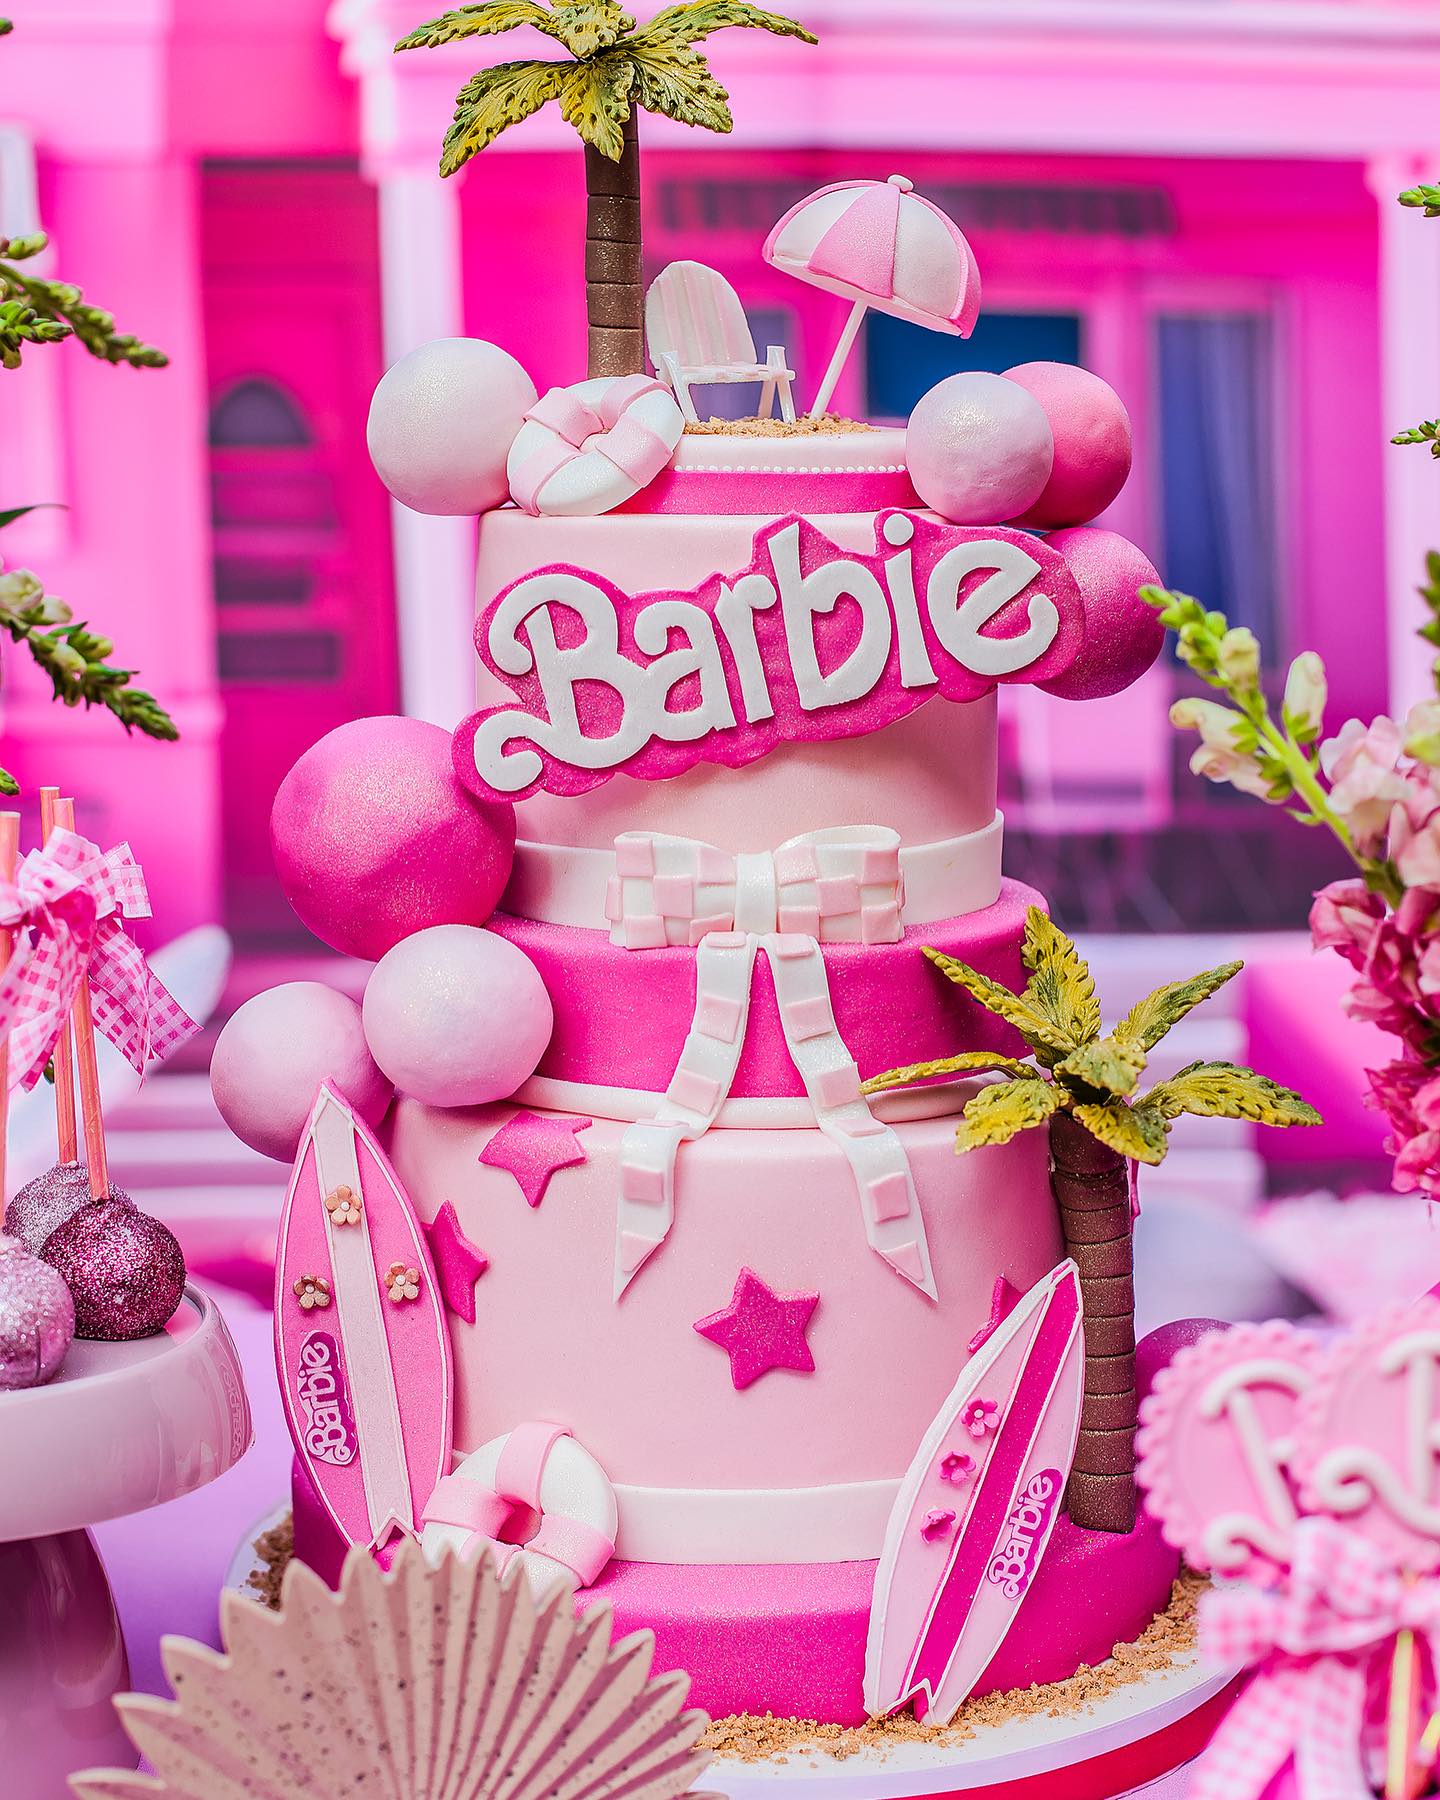 Festa da Barbie: 70 fotos e vídeos para arrasar na decoração